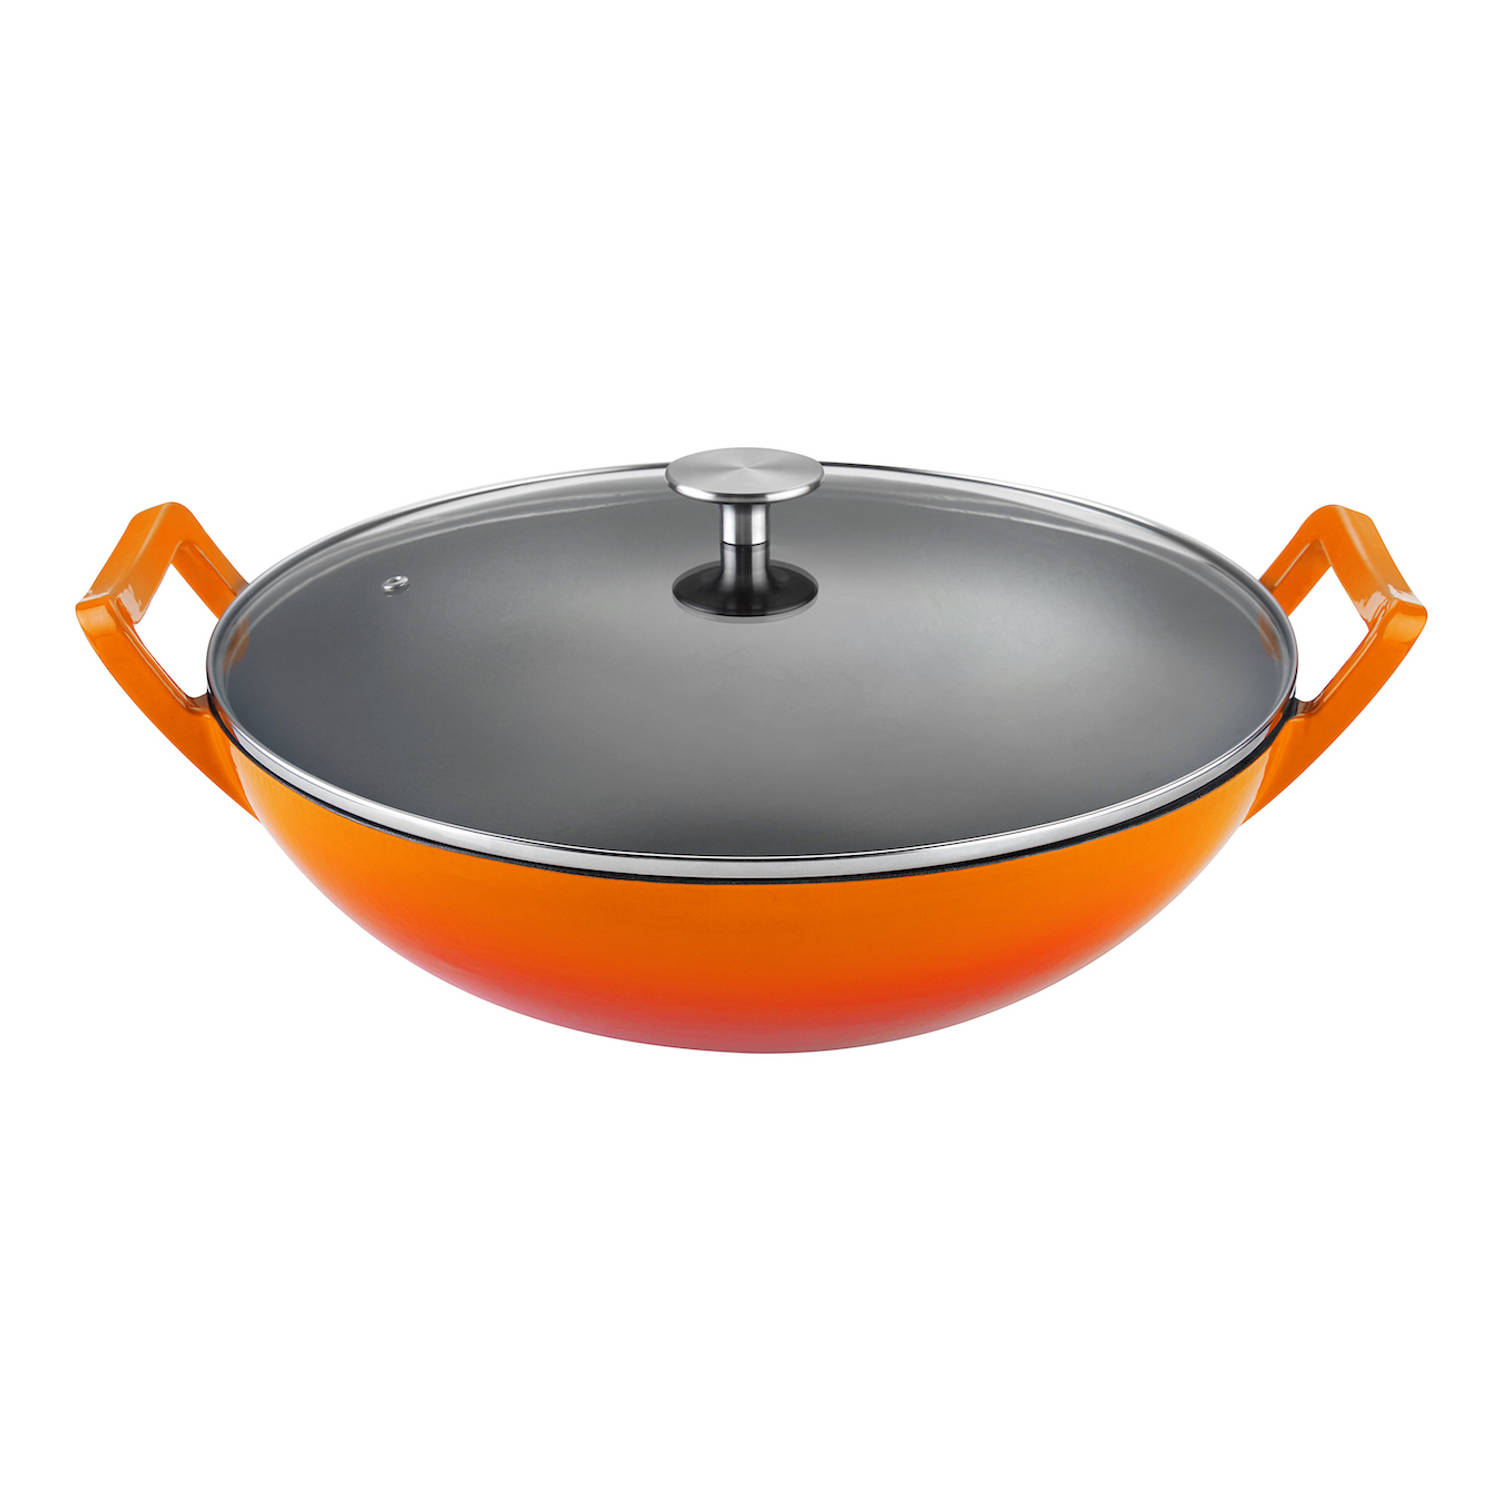 Buccan Hamersley Gietijzeren wokpan 36cm Oranje